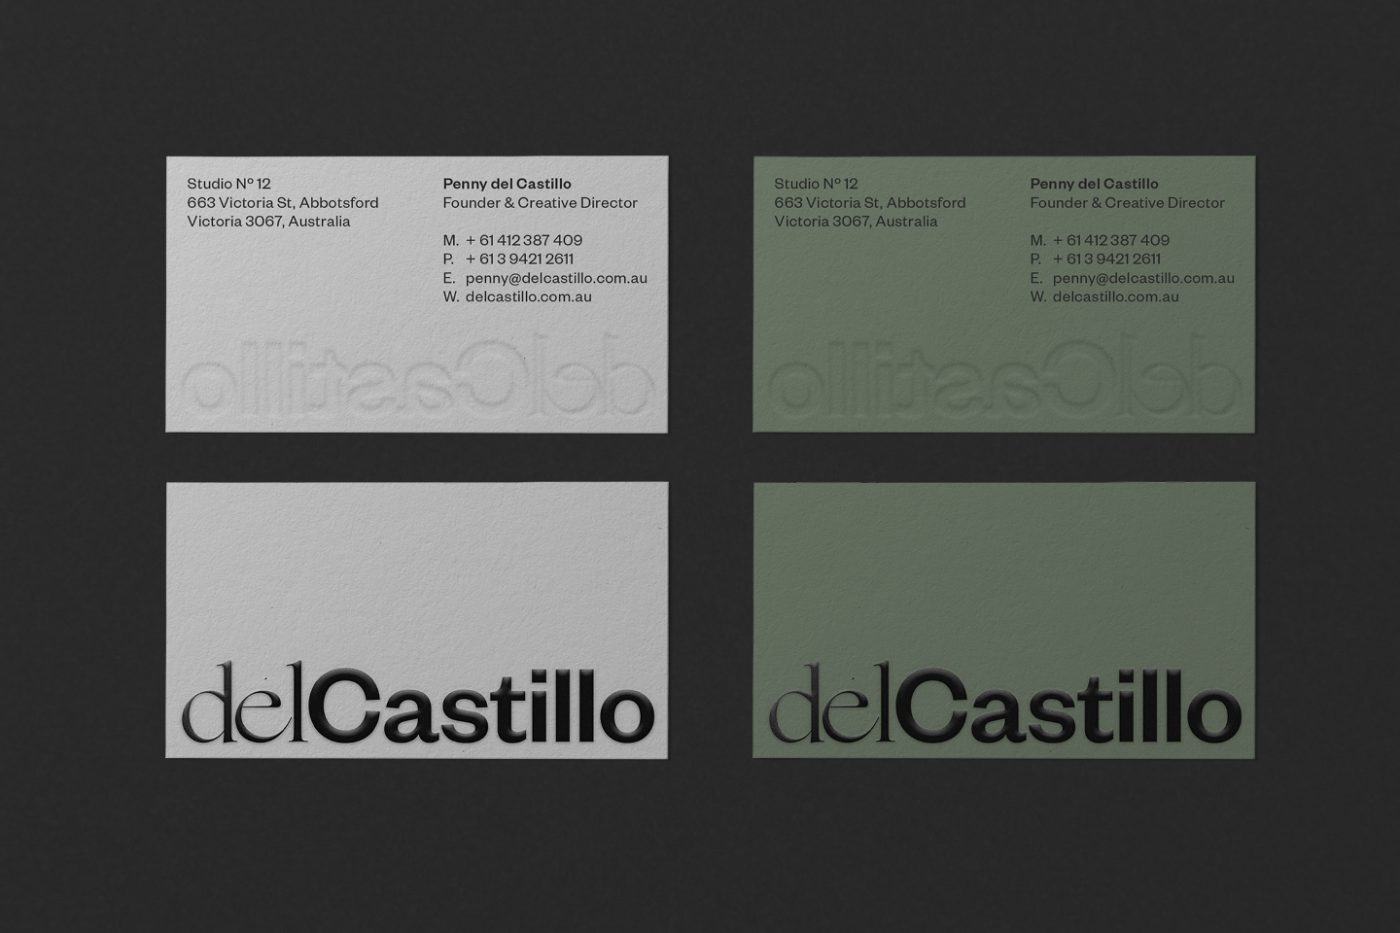 del Castillo business card in white and green